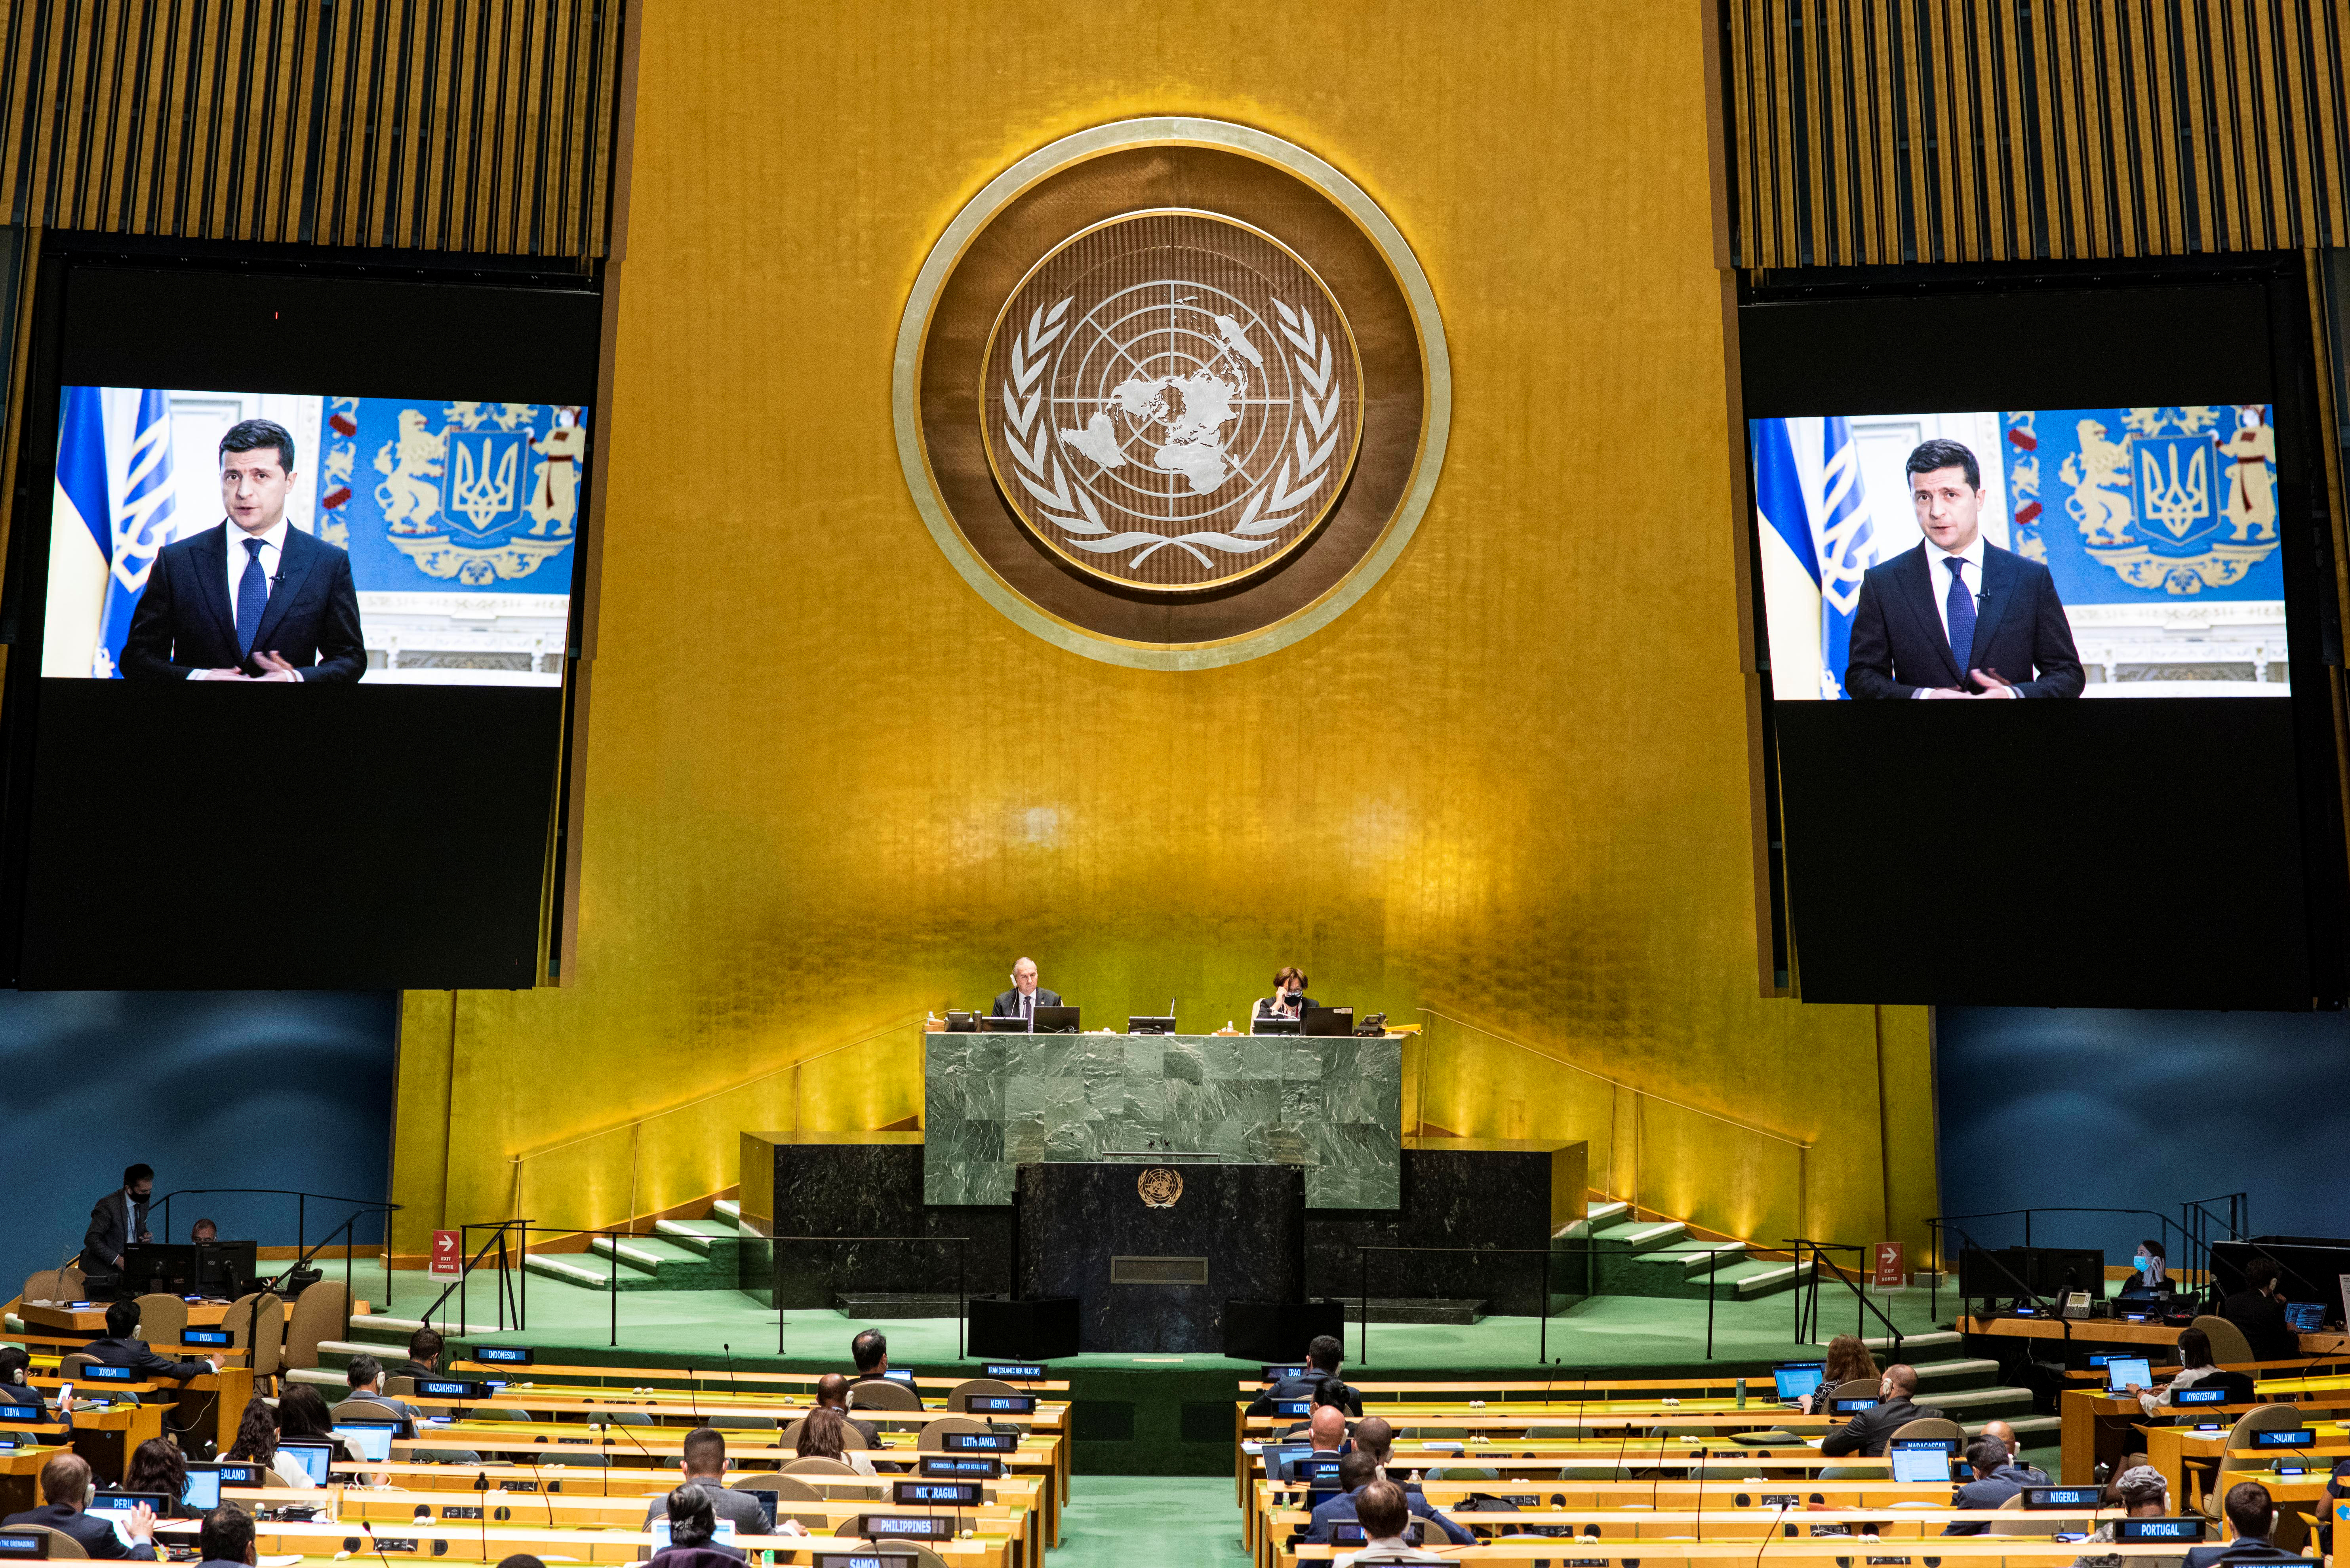 Оон n. Генеральная Ассамблея ООН (организация Объединенных наций).. Зал Генеральной Ассамблеи ООН. Зал заседания Генеральной Ассамблеи ООН. 75 Сессия Генеральной Ассамблеи ООН.